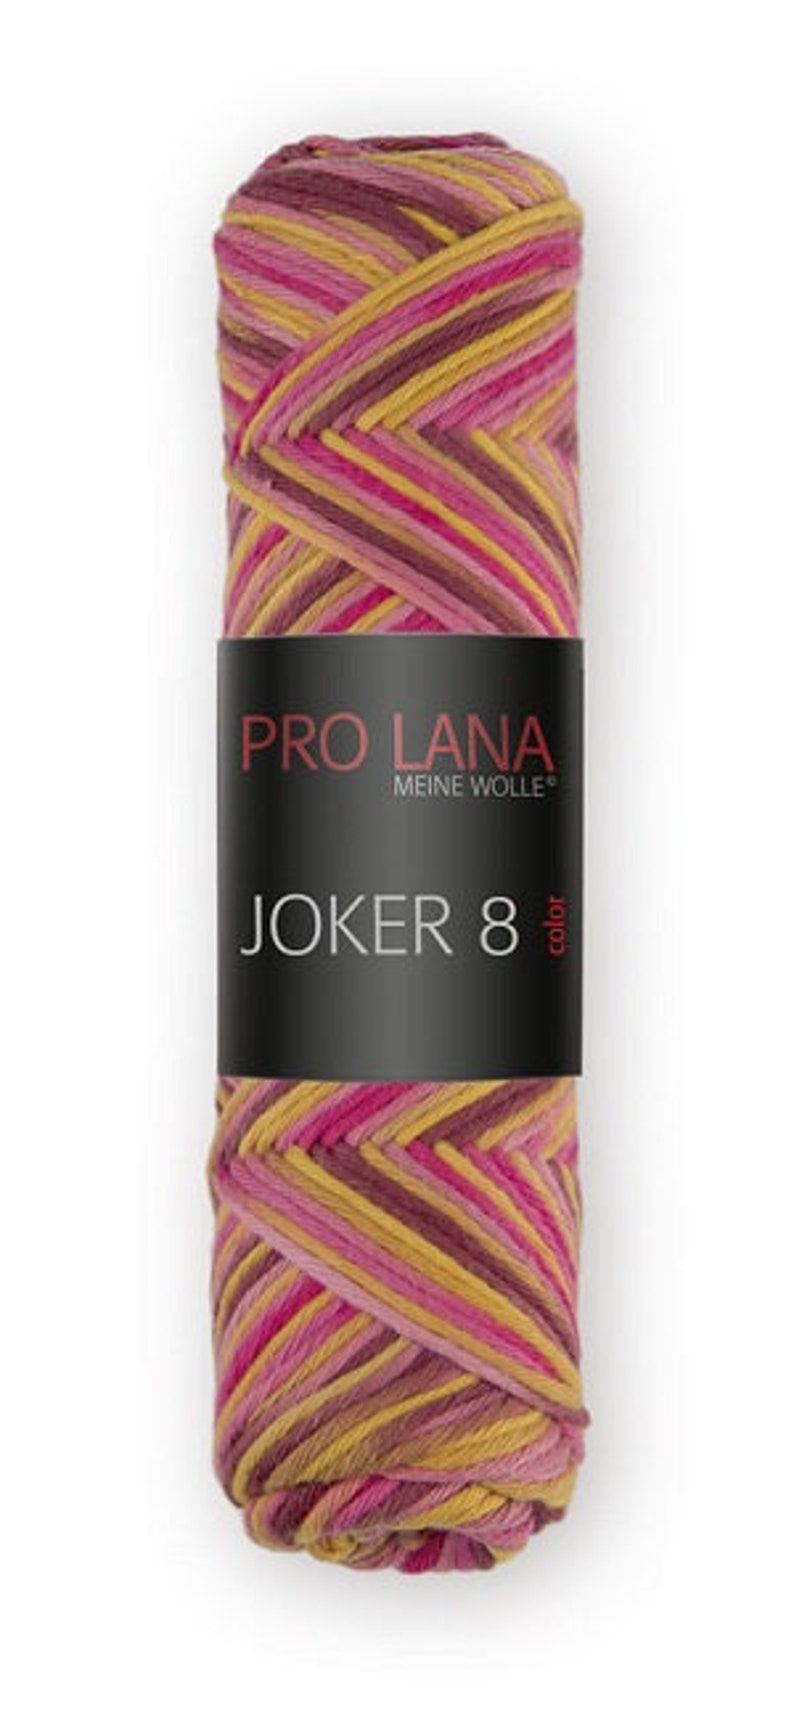 Wolle Pro Lana Joker 8 Bild 1